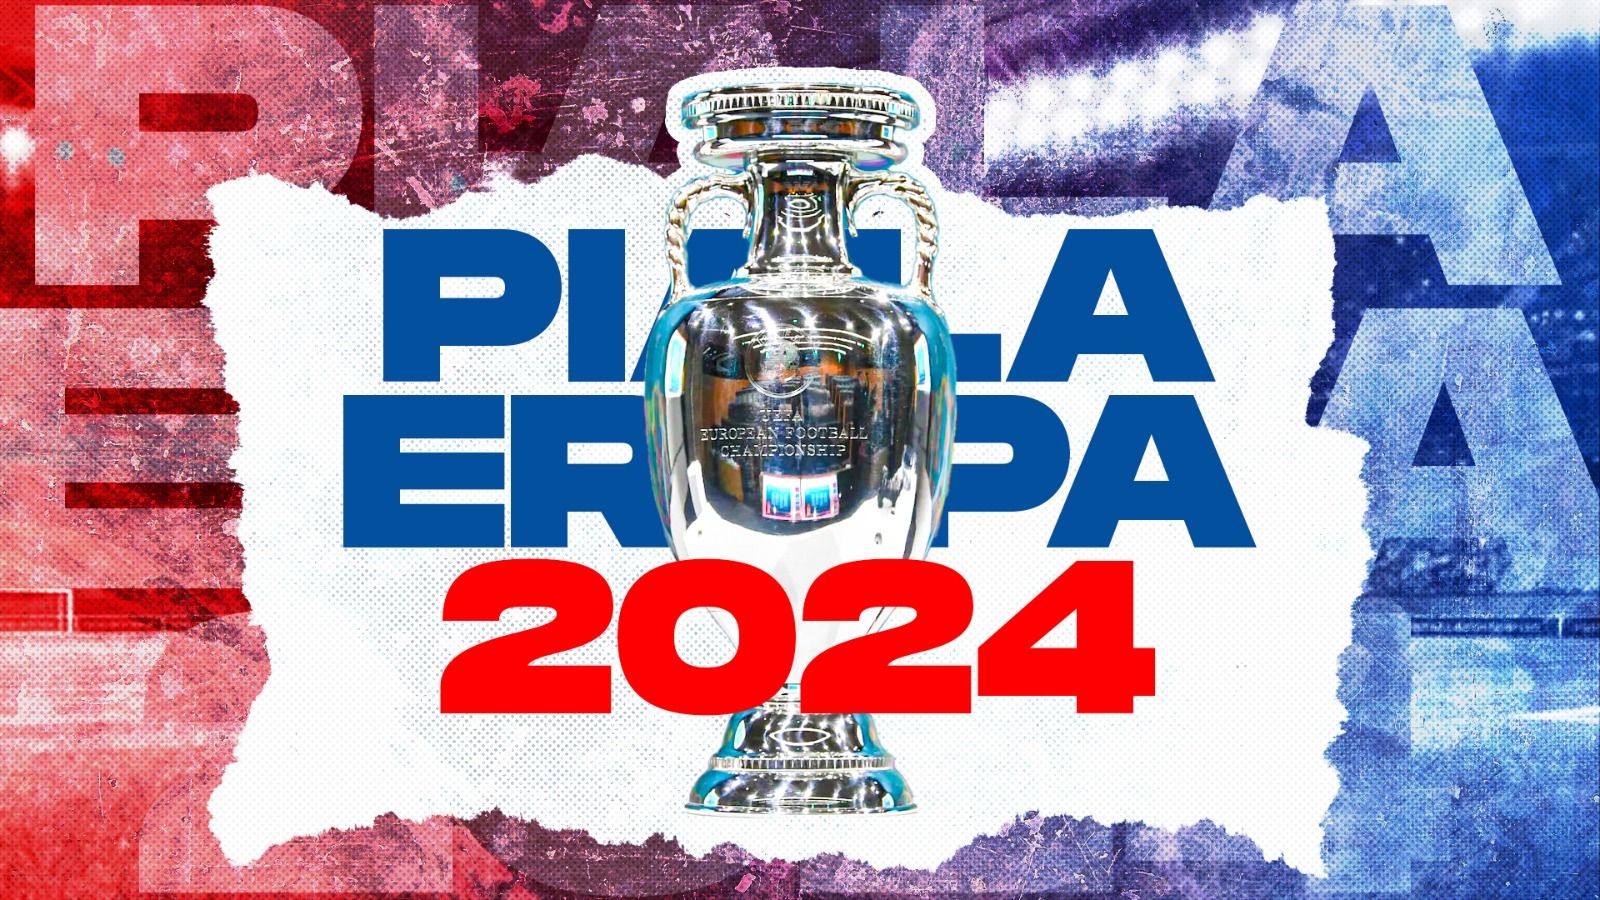 Euro 2024: Jadwal Pembukaan, Venue, dan Hal Yang Wajib Diketahui